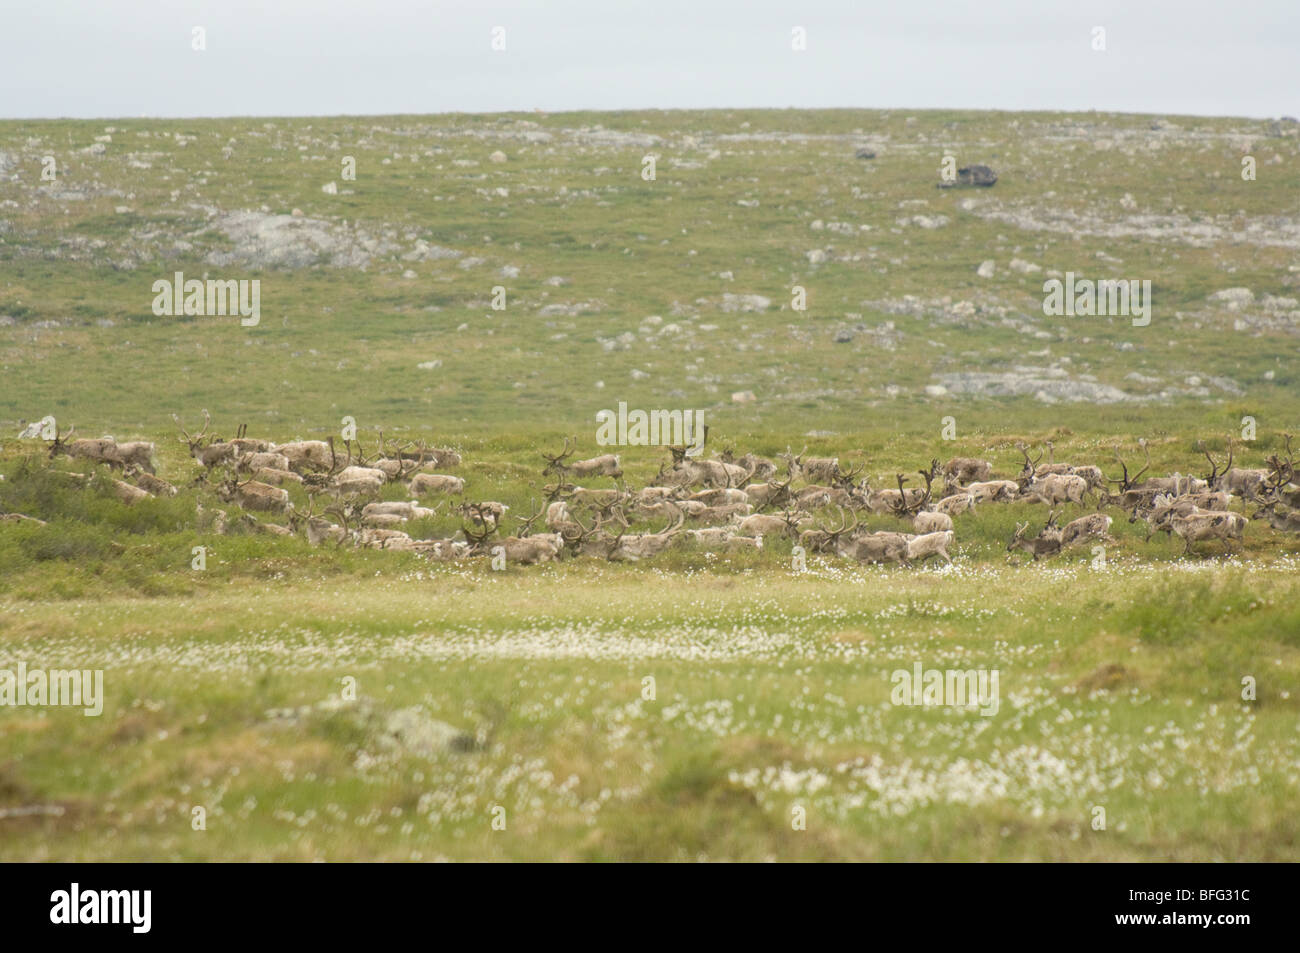 Le caribou de la toundra migration estivale, Rangifer tarandus groenlandicus. Au nord de Whitefish Lake, Territoires du Nord-Ouest, Canada Banque D'Images